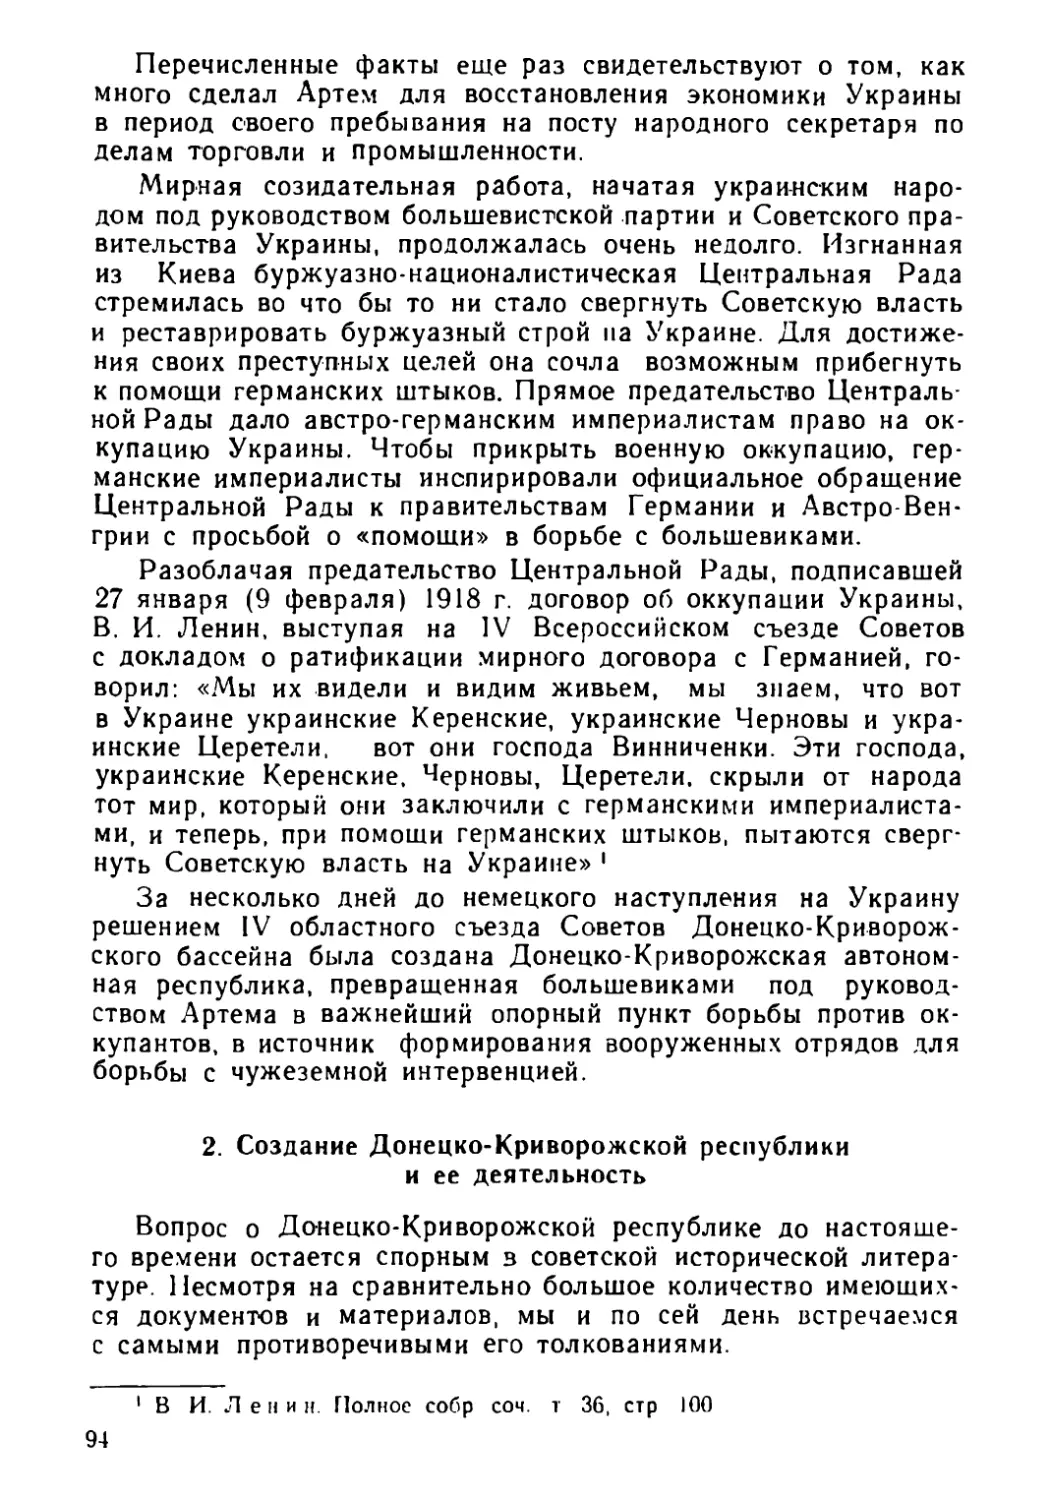 2. Создание Донецко-Криворожской республики и ее деятельность